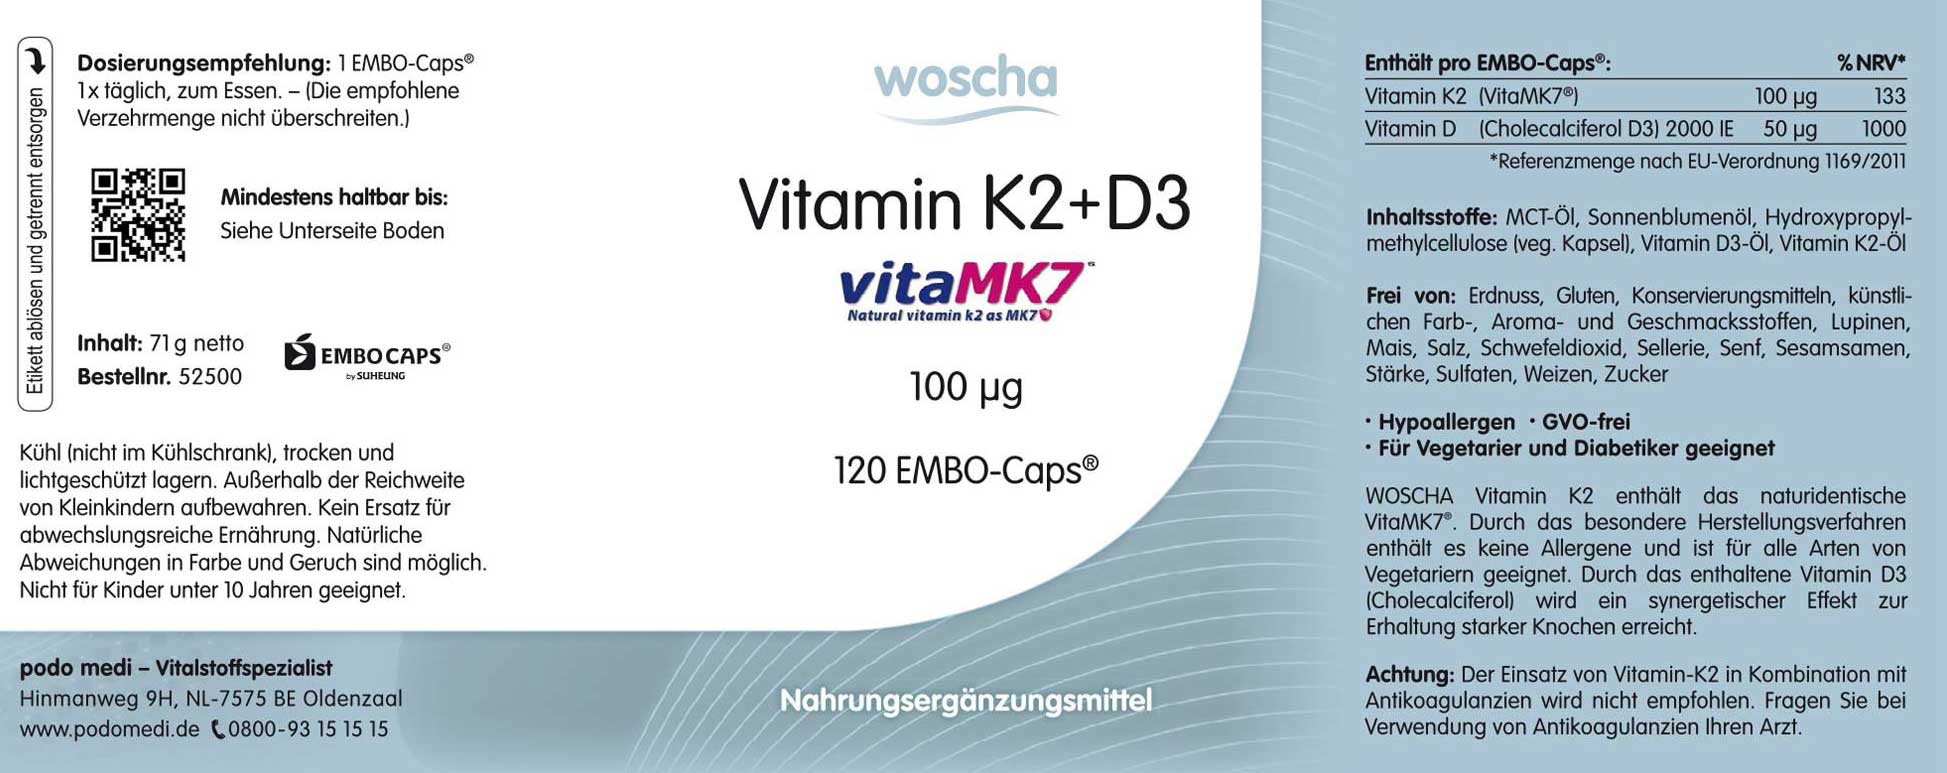 Woscha Vitamin K2 + D3 von podo medi beinhaltet 120 Kapseln Etikett